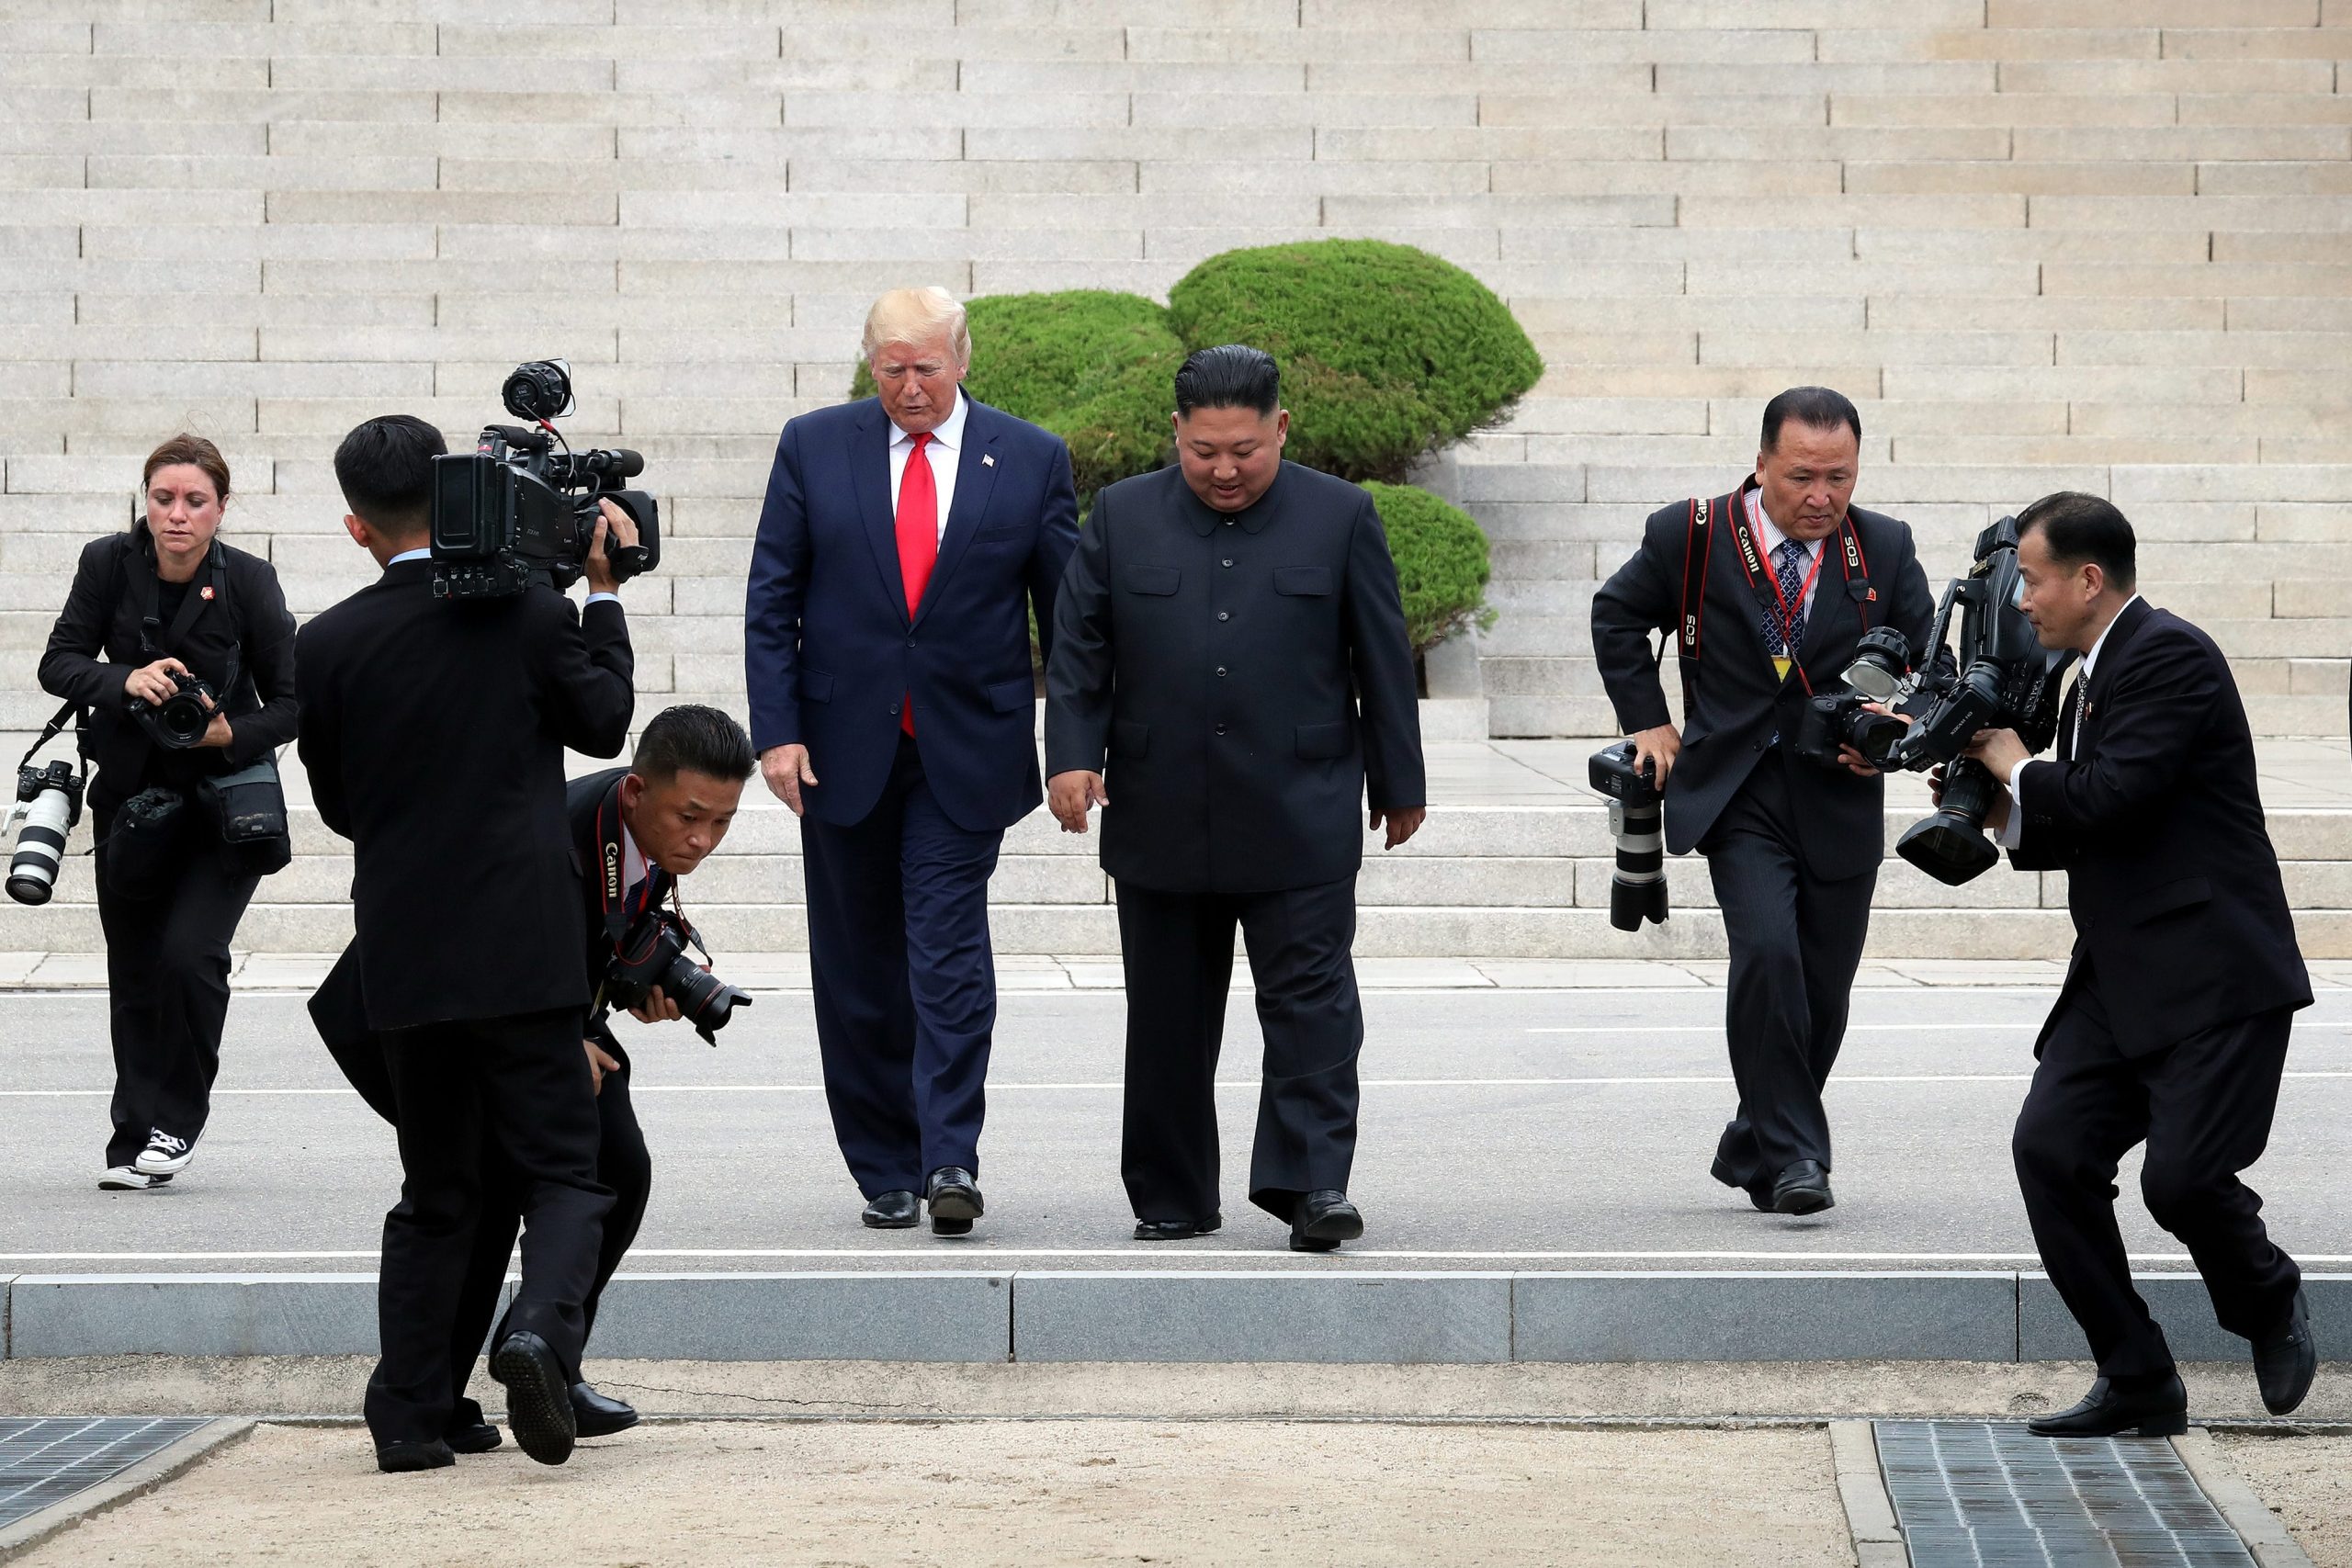 De Noord-Koreaanse leider Kim Jong-un en Donald Trump zetten voet in de gedemilitariseerde zone tussen Noord- en Zuid-Korea op 30 juni 2019. Foto: Dong-A Ilbo/Getty Images